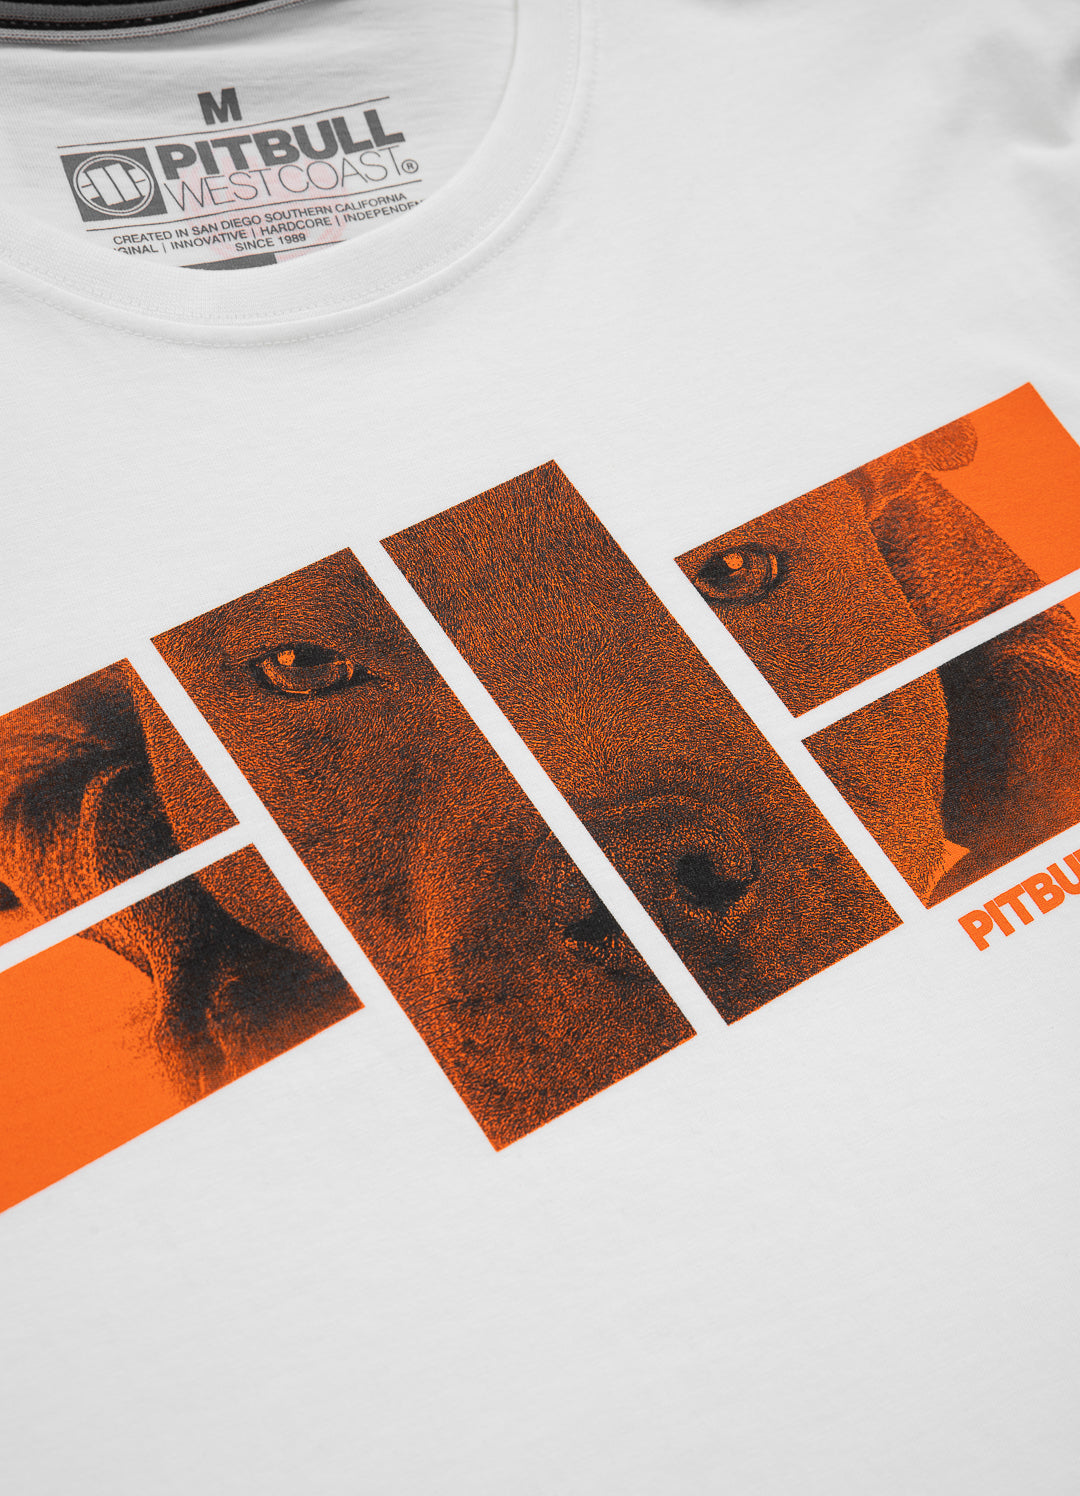 T-shirt ORANGE DOG 22 White - Pitbull West Coast International Store 